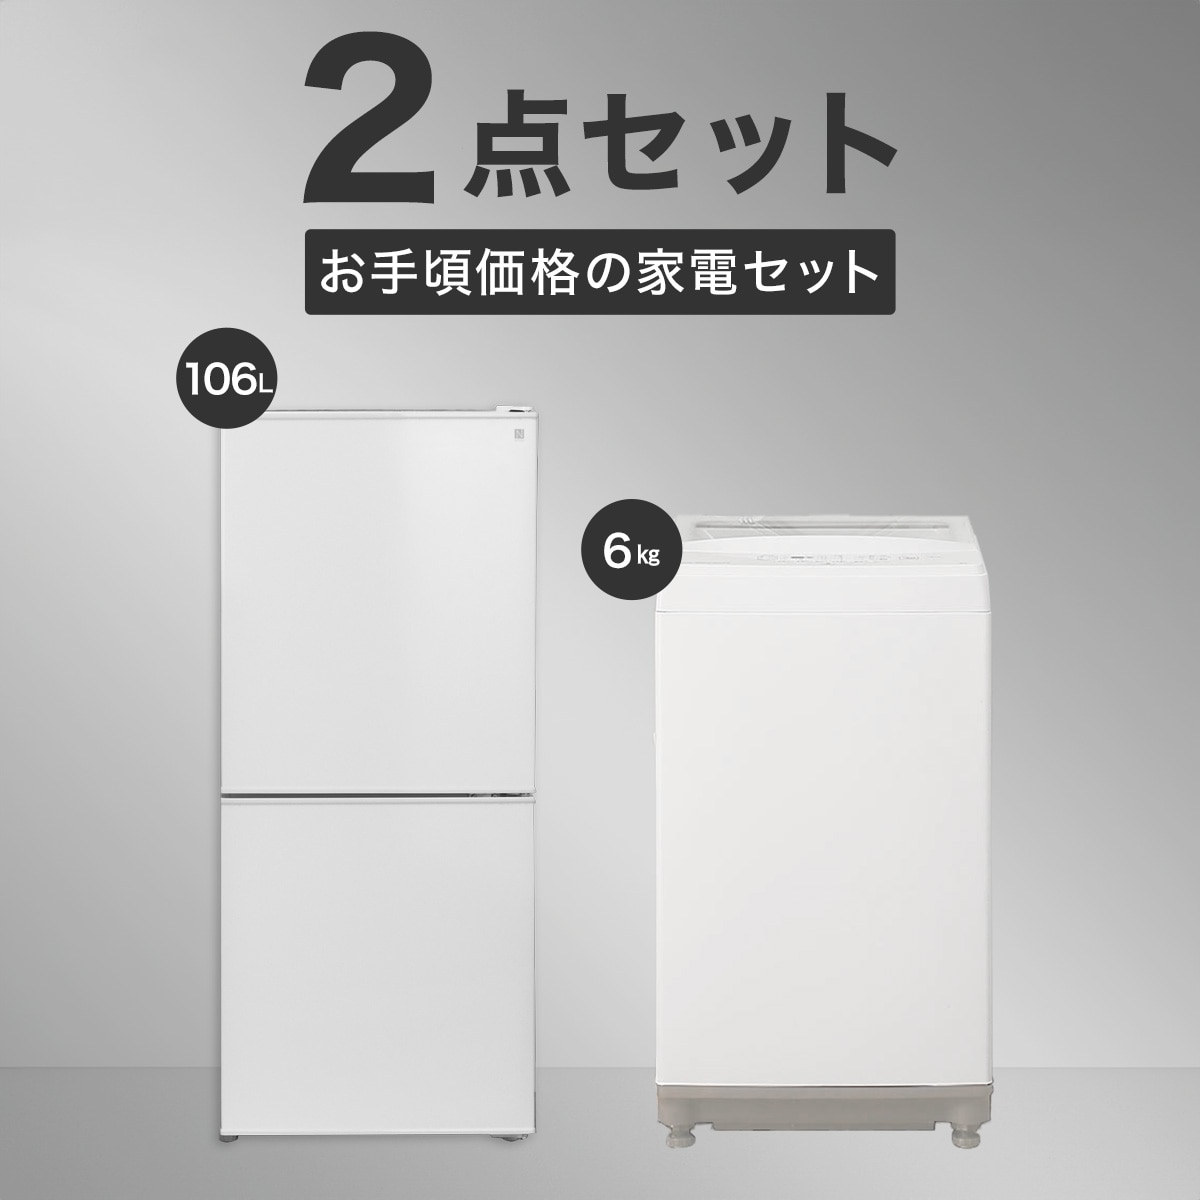 家電2点セット】お手頃価格セット 106L冷蔵庫＋6㎏洗濯機セット通販 